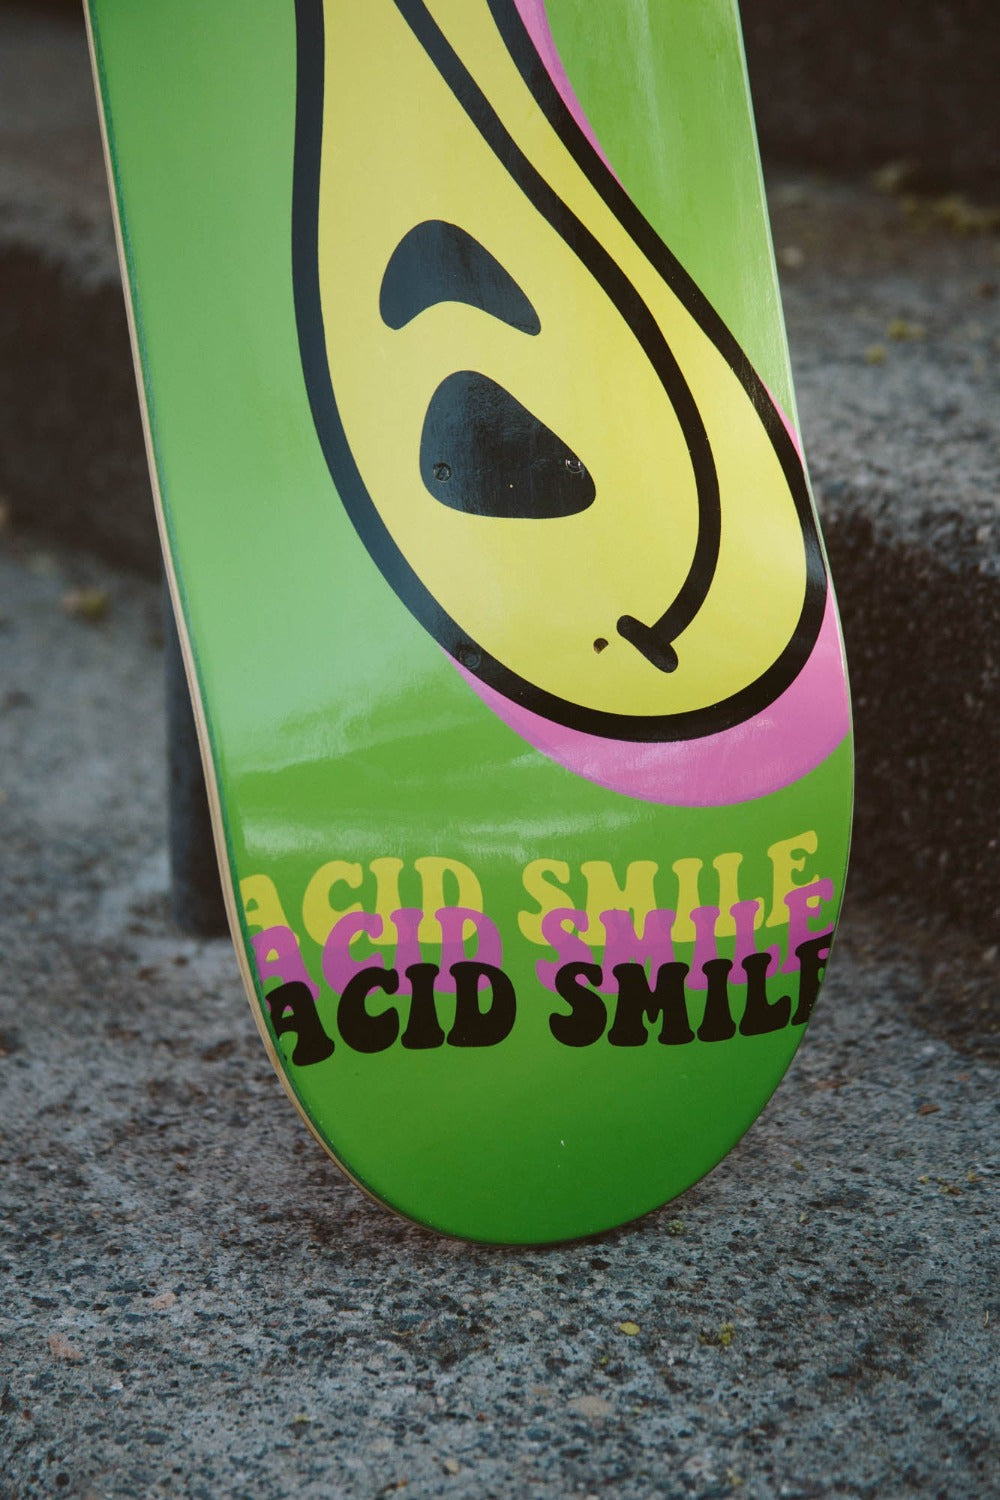 Tabla Acid Smile